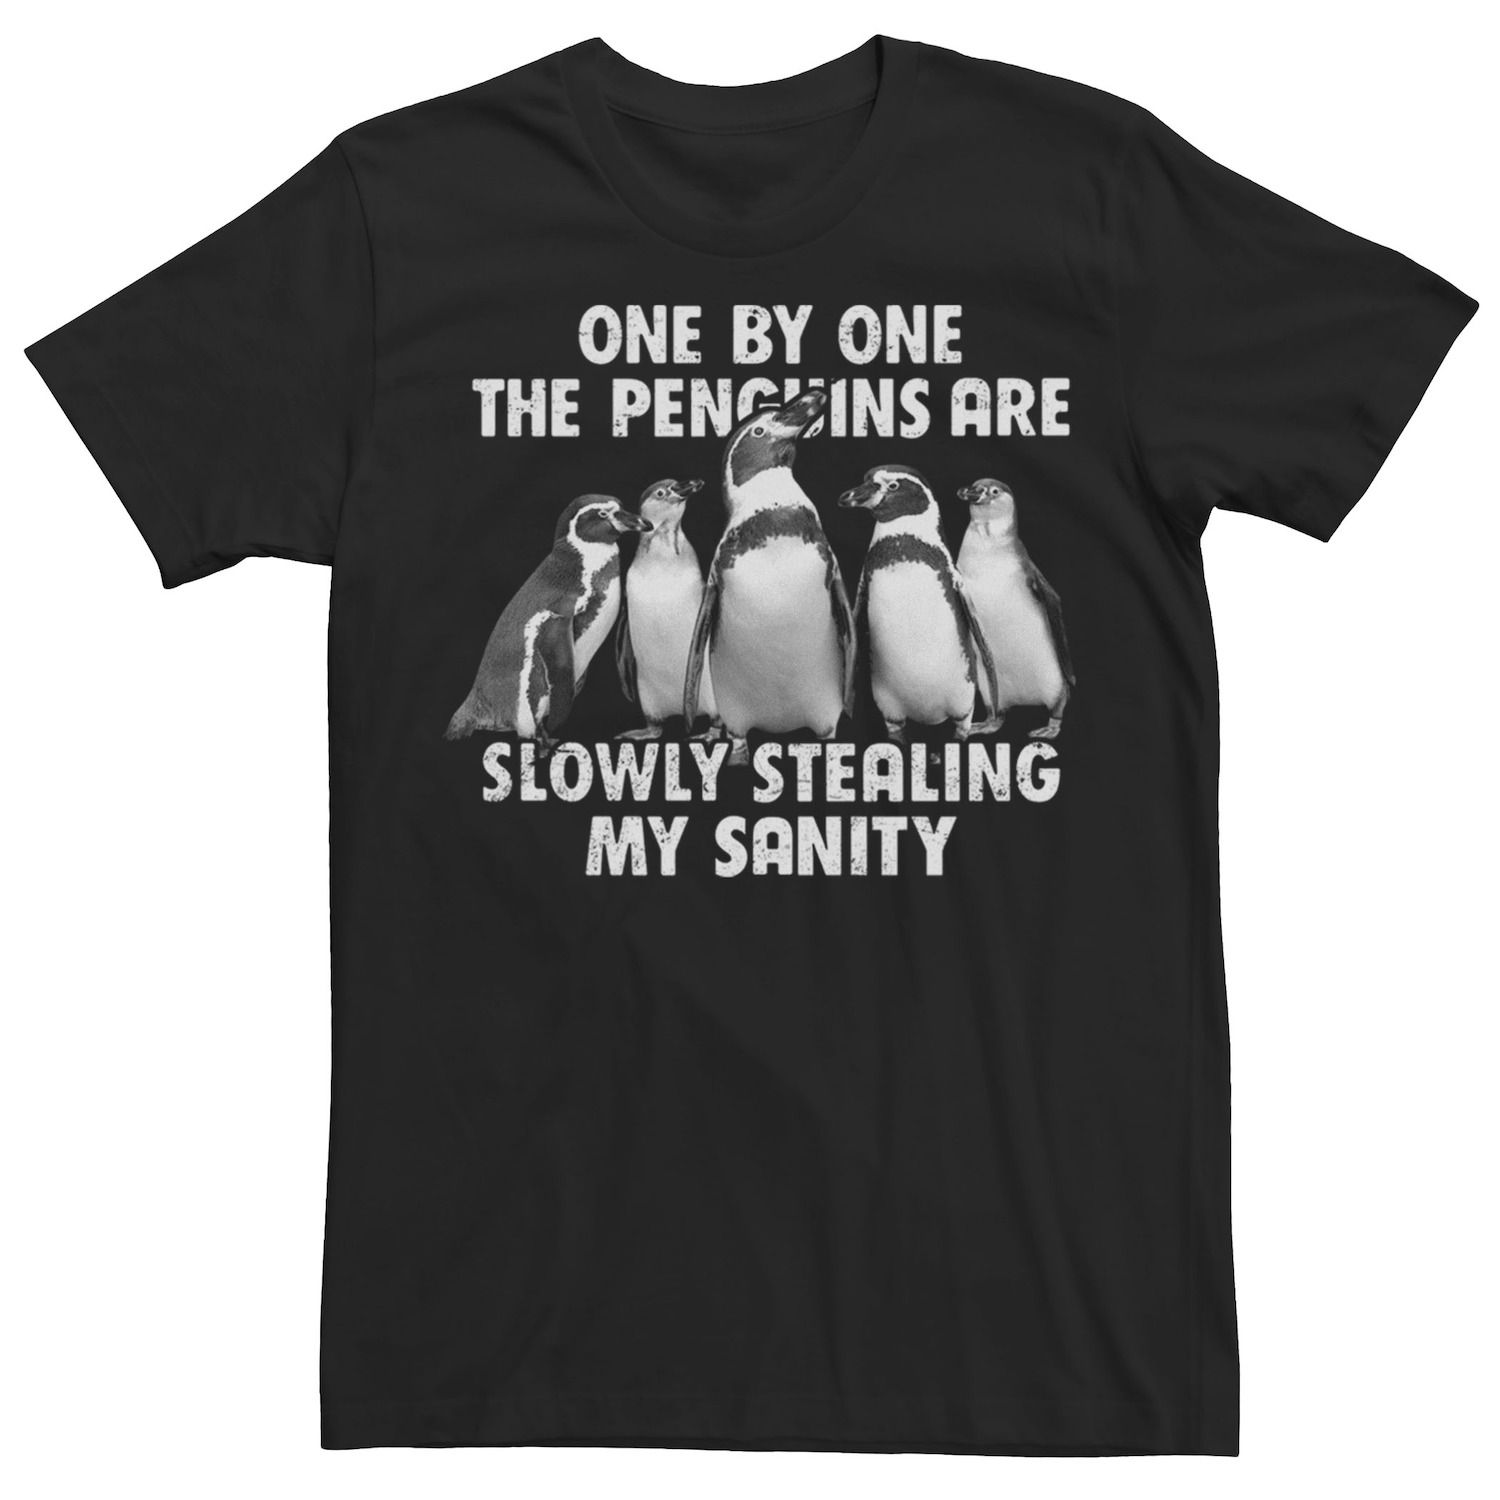 Мужская футболка с забавным рисунком «Пингвины медленно крадут мое здравомыслие» Licensed Character